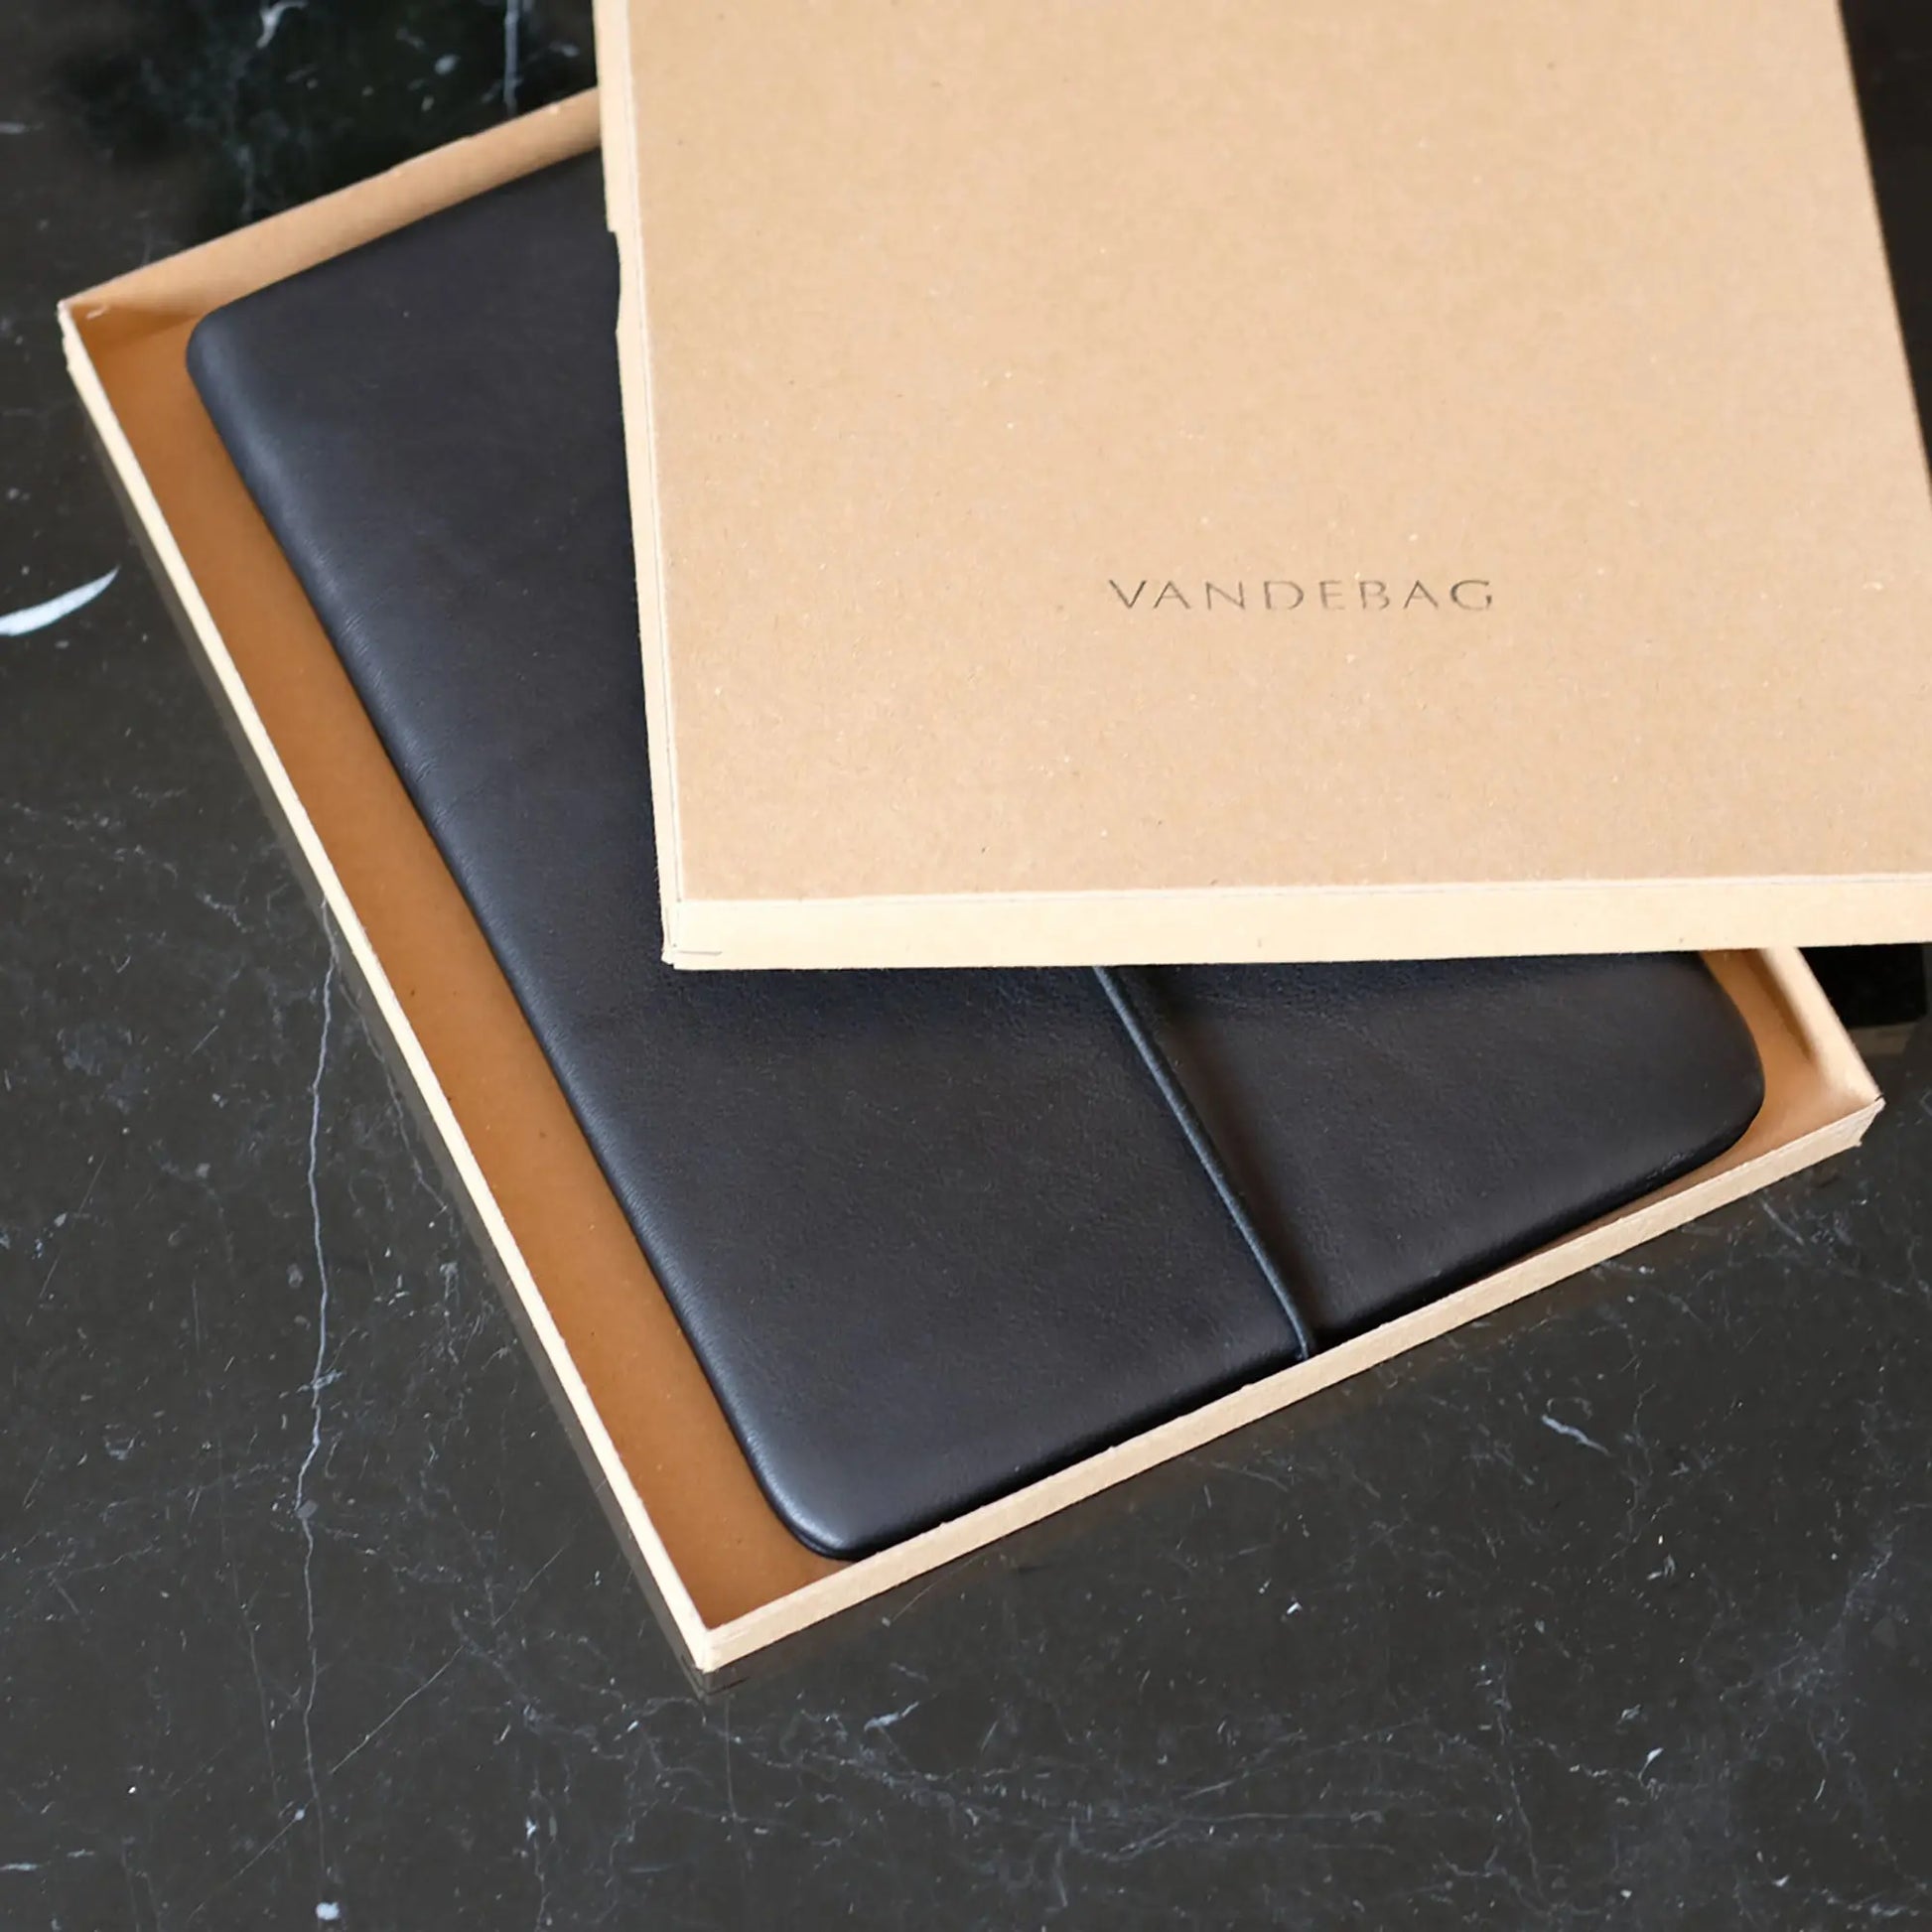 schwarze Lederhülle für iPads liegt in einem Geschenkkarton auf einem schwarzen Tisch